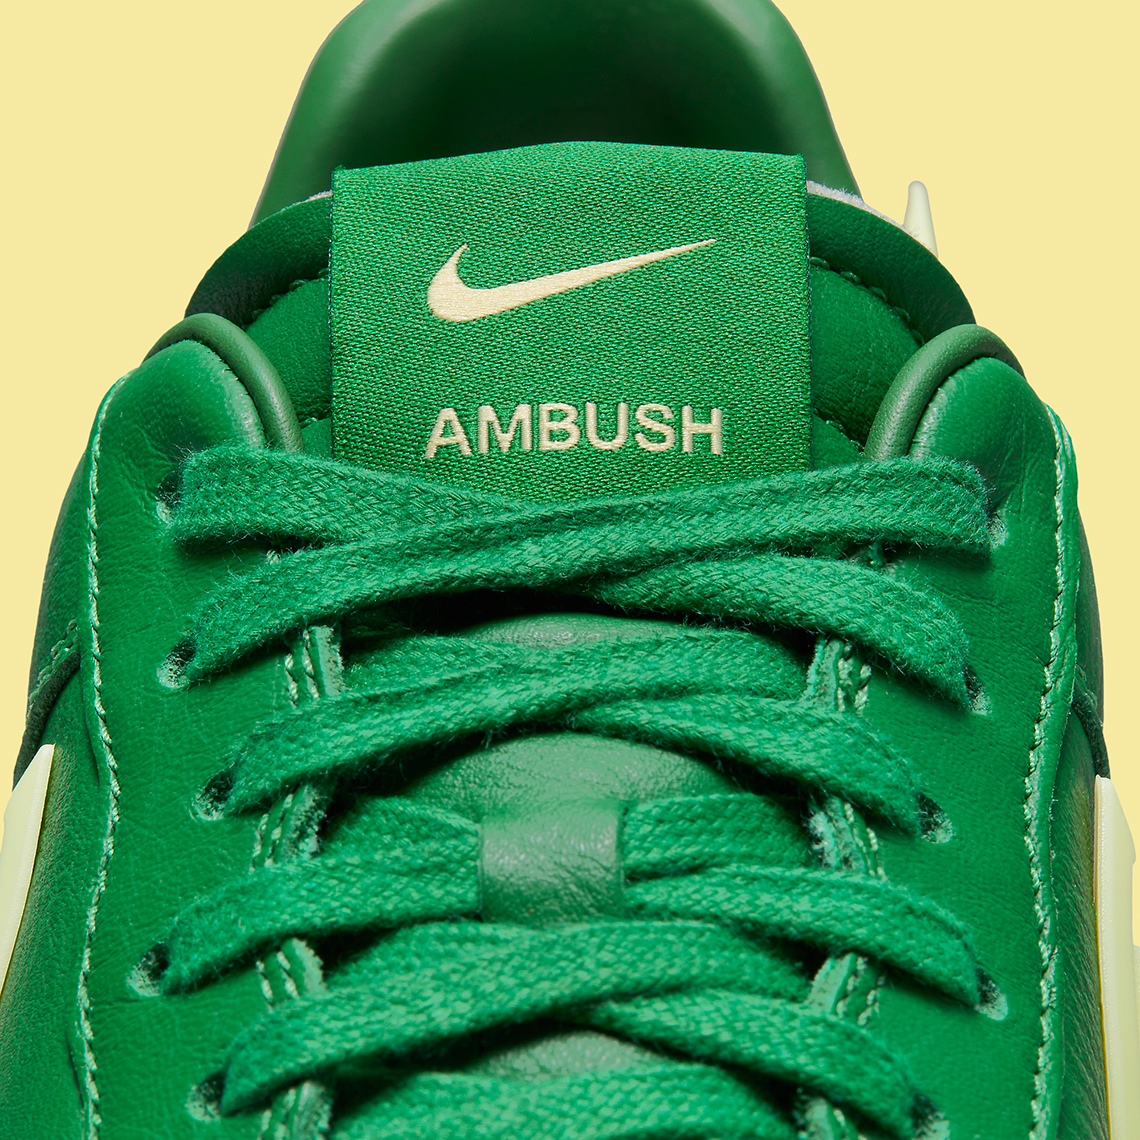 Ambush nike 6.0 mavrk black sneaker shoes Pine Green Pale Yellow Dv3464 300 7